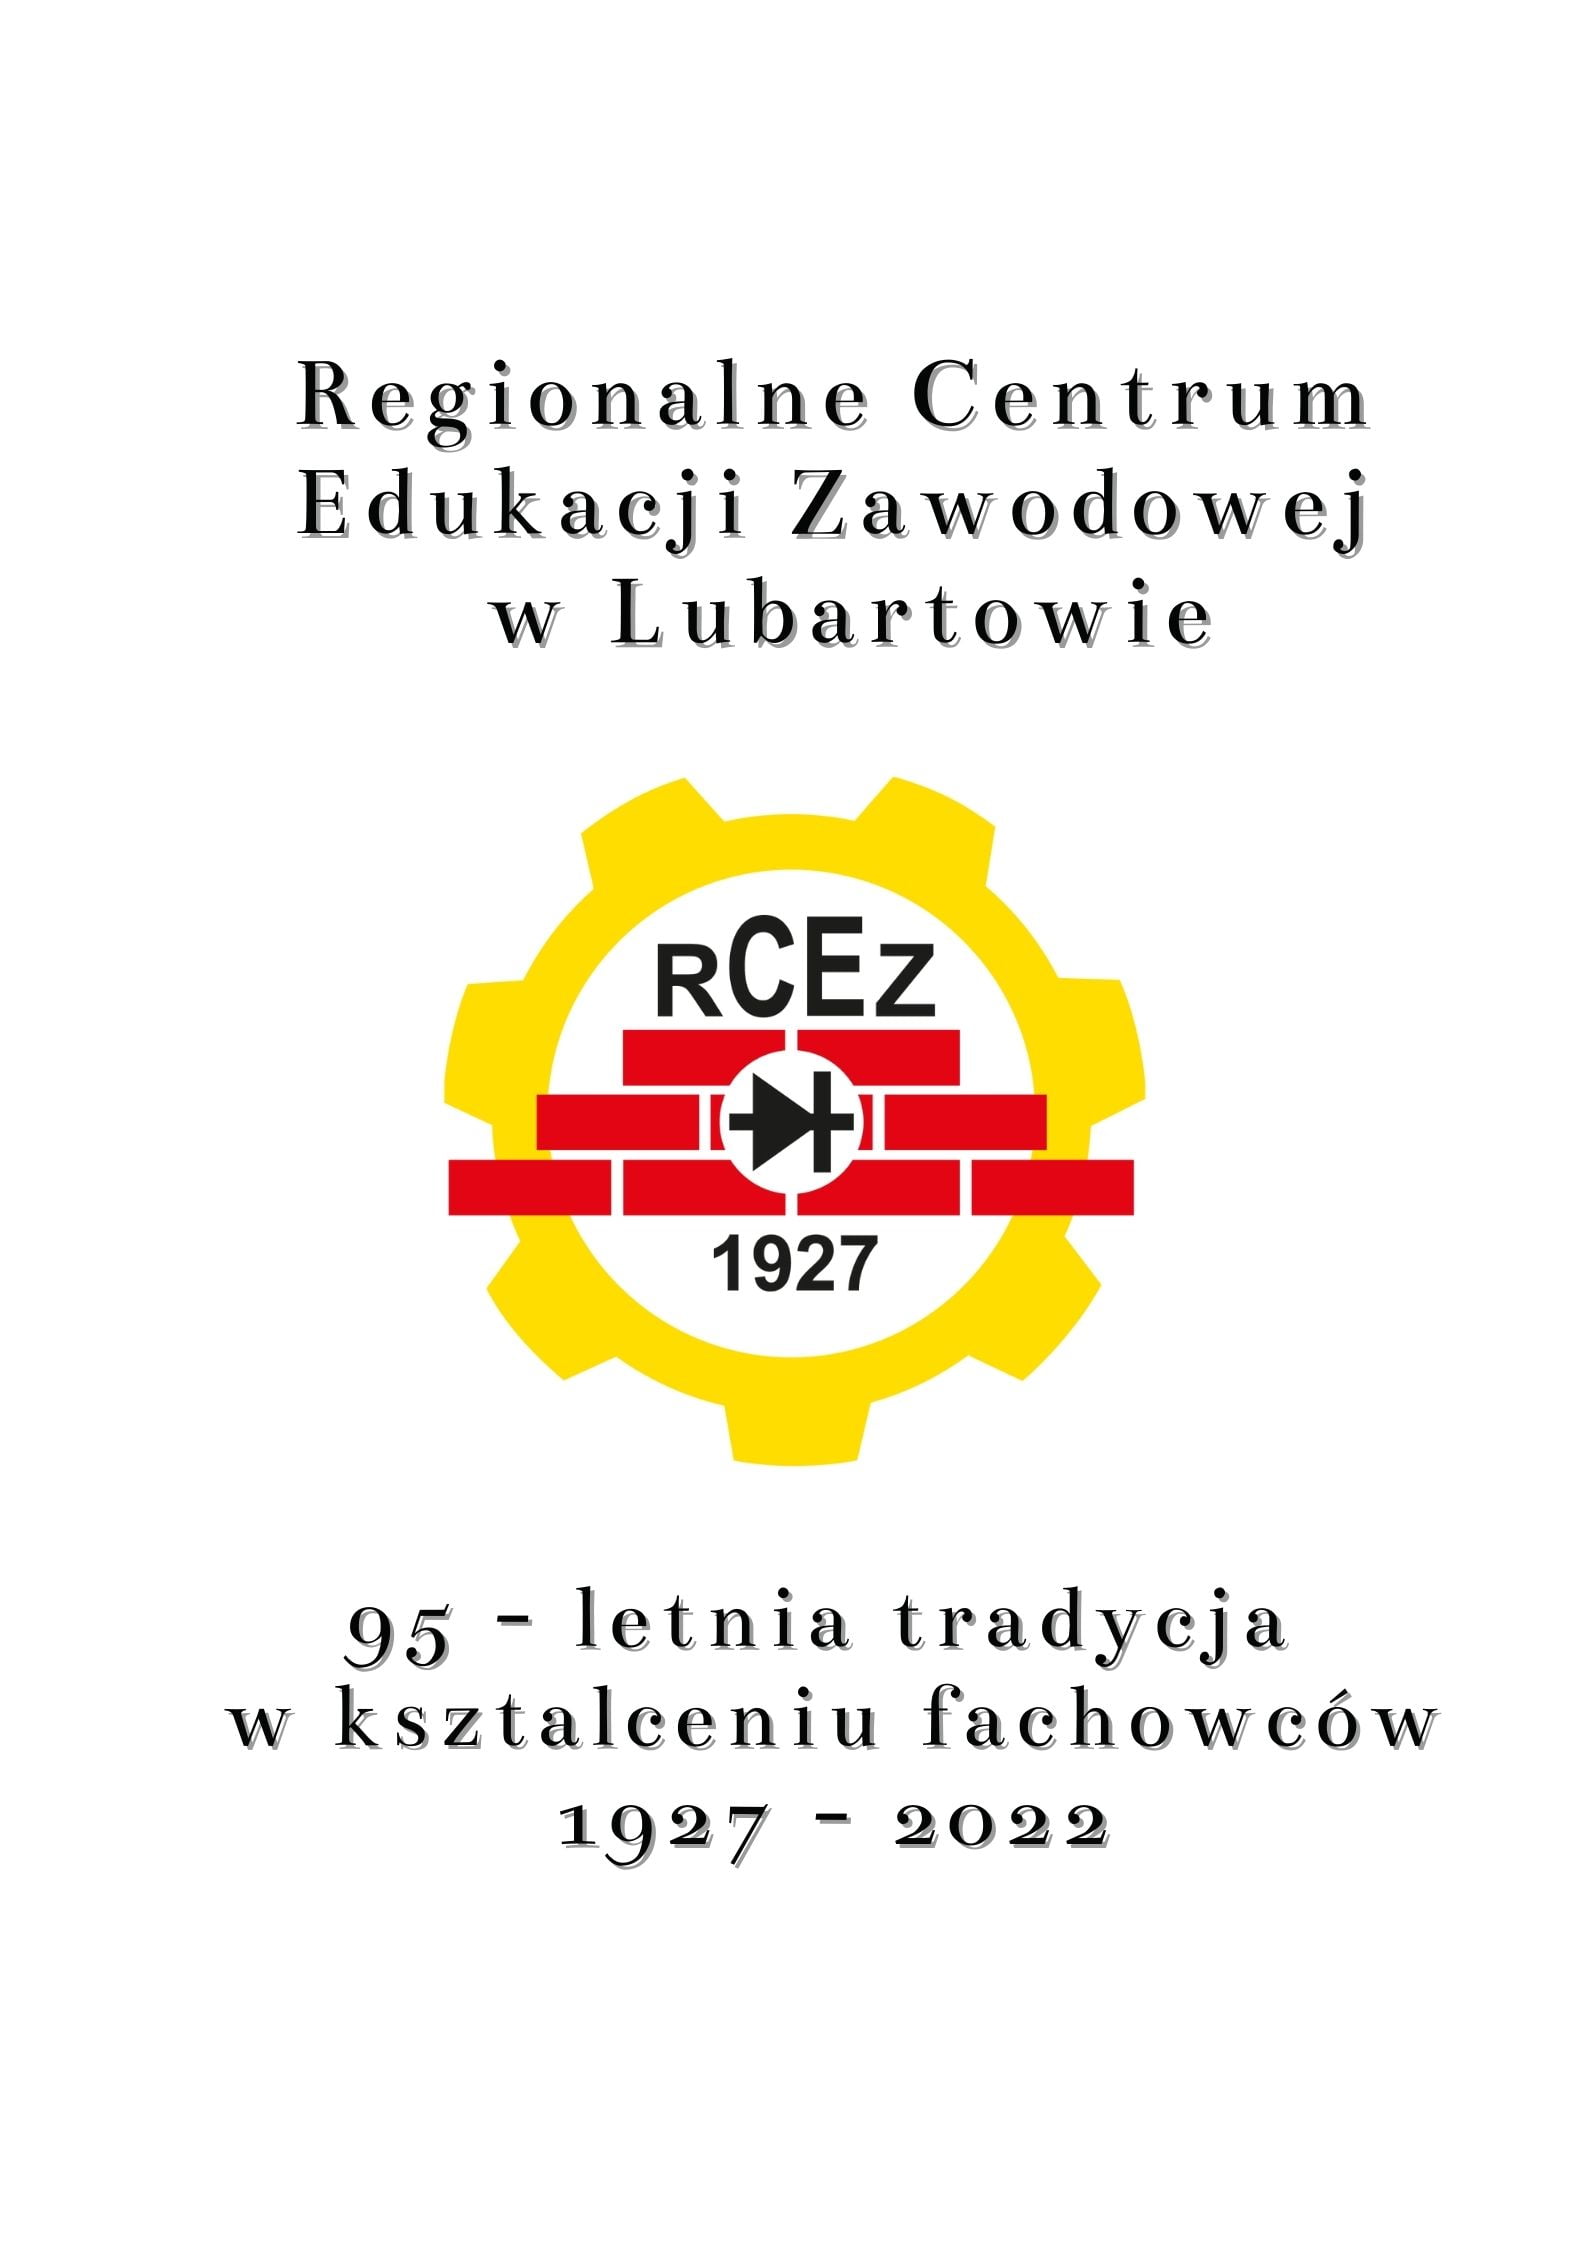 Oferta RCEZ w Lubartowie 2021-2022